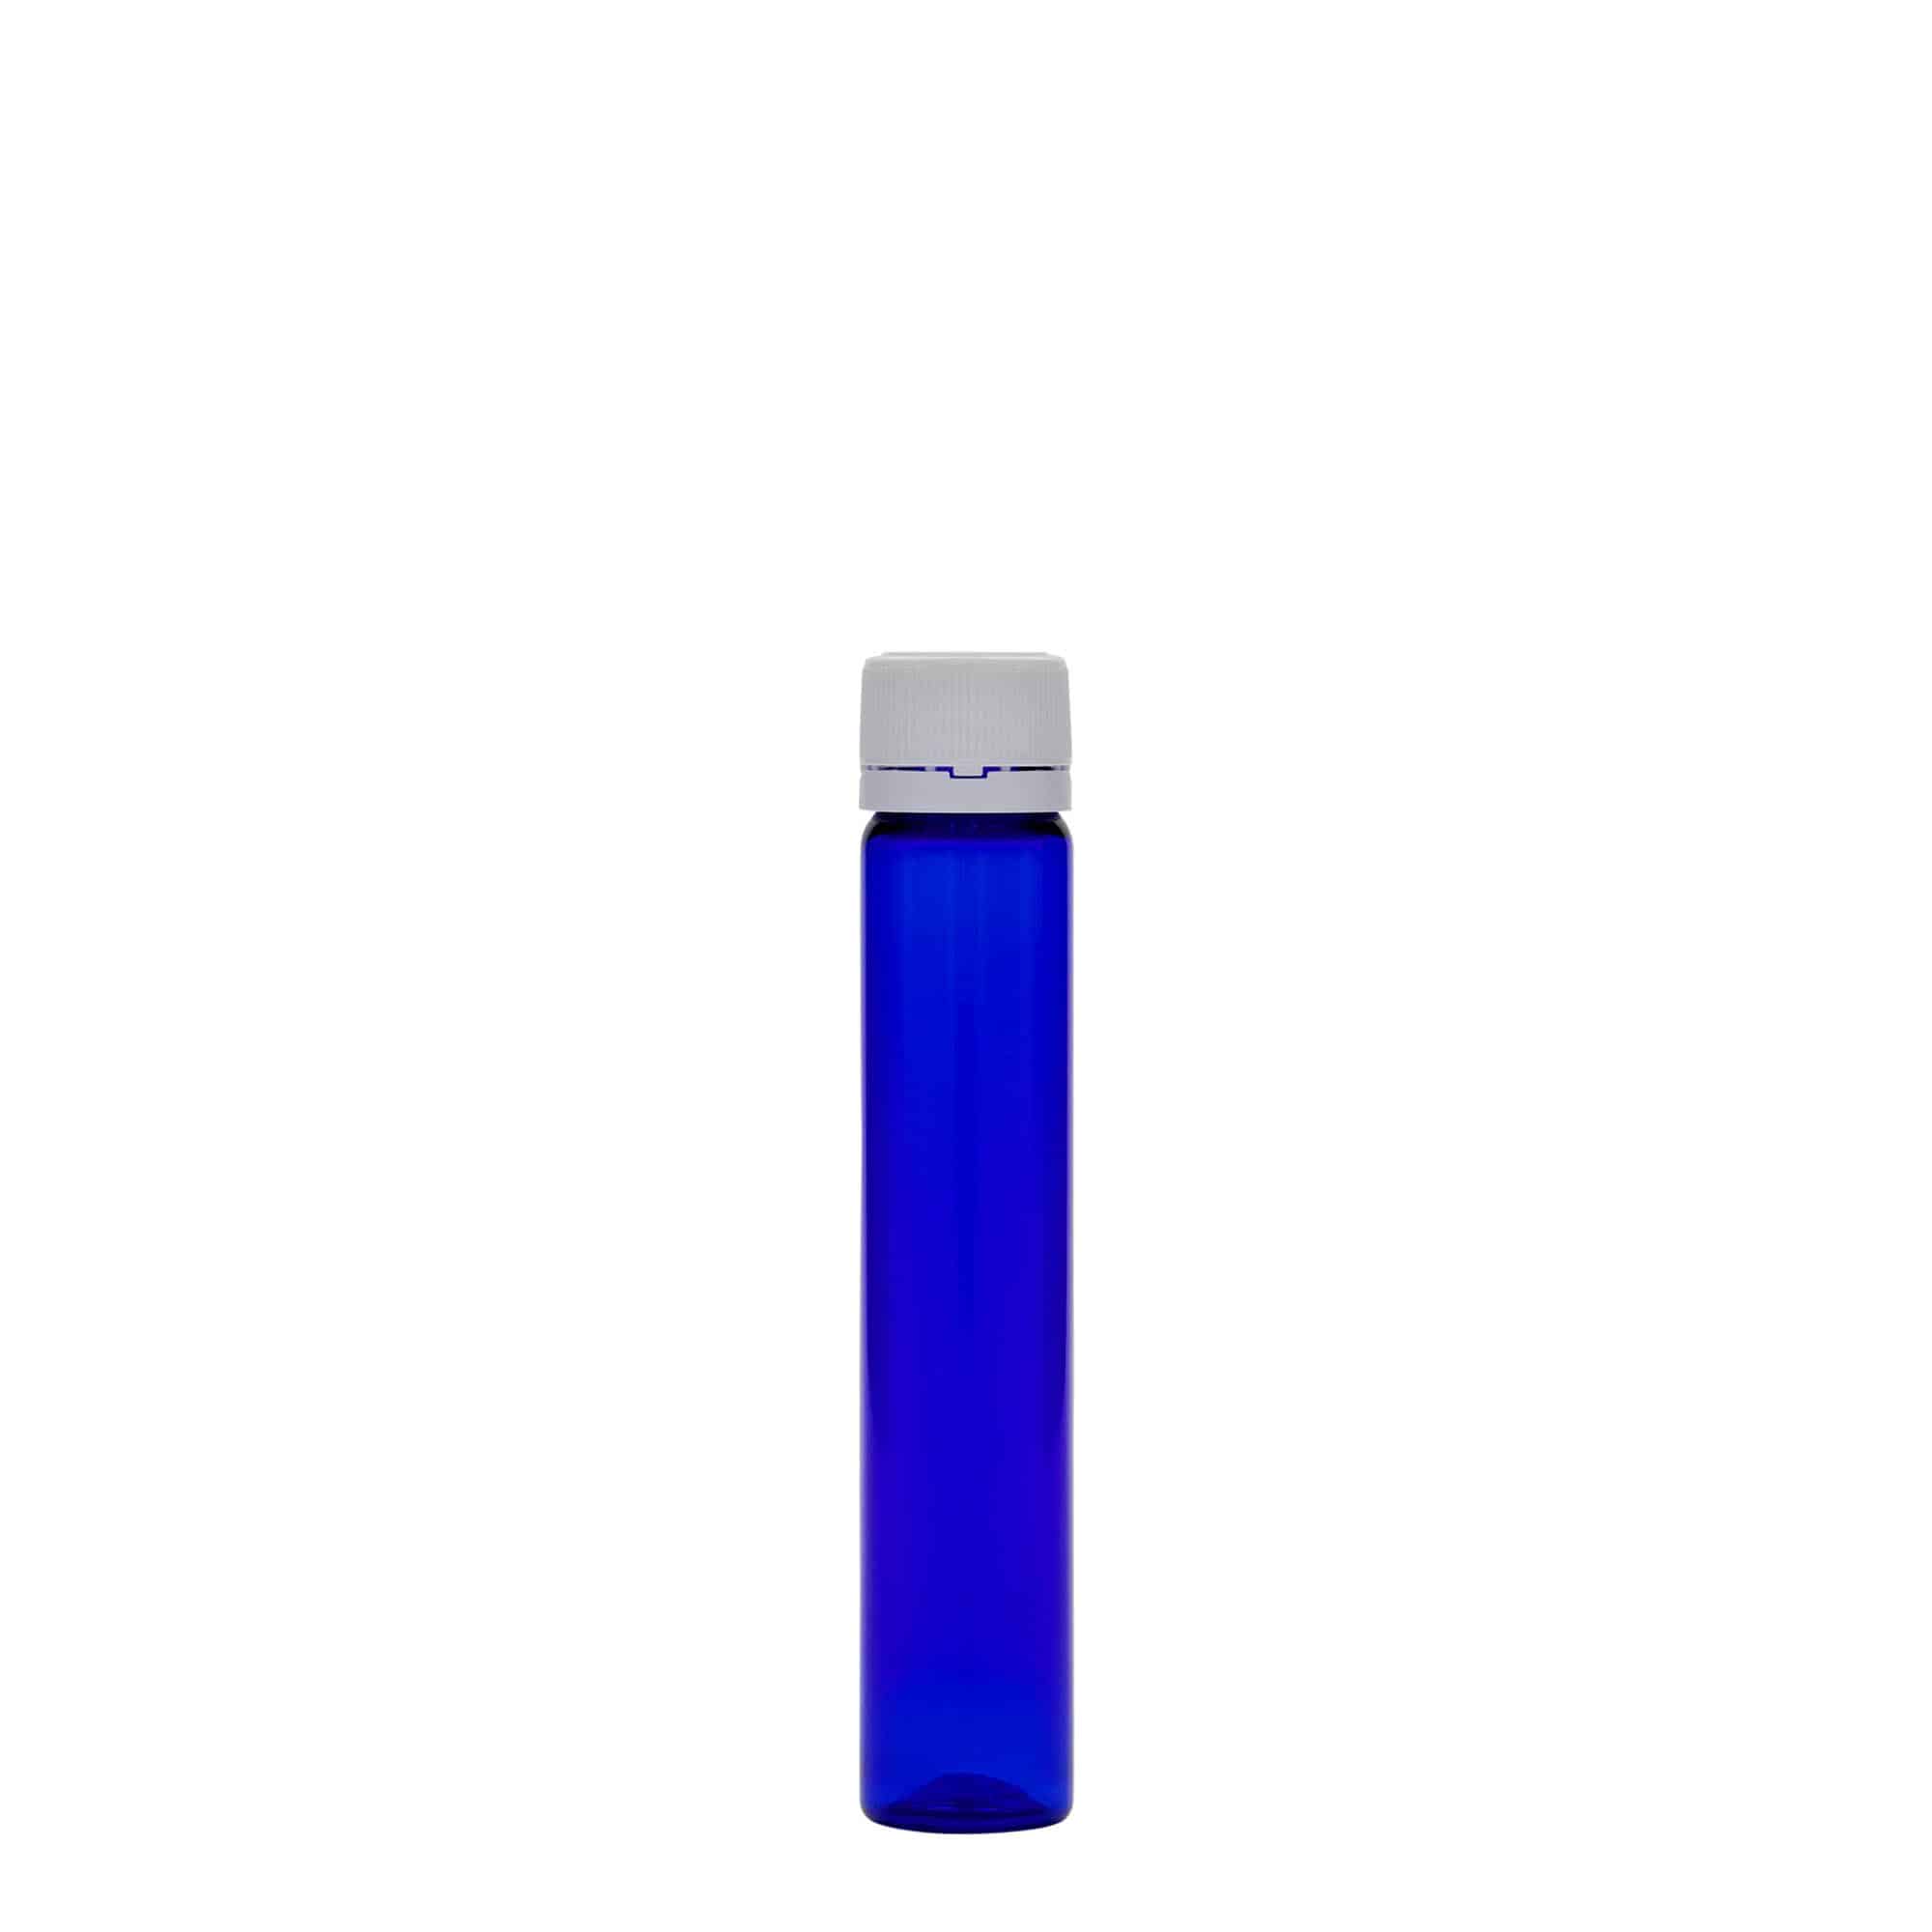 25 ml rurka PET, tworzywo sztuczne, kolor błękit królewski, zamknięcie: zakrętka